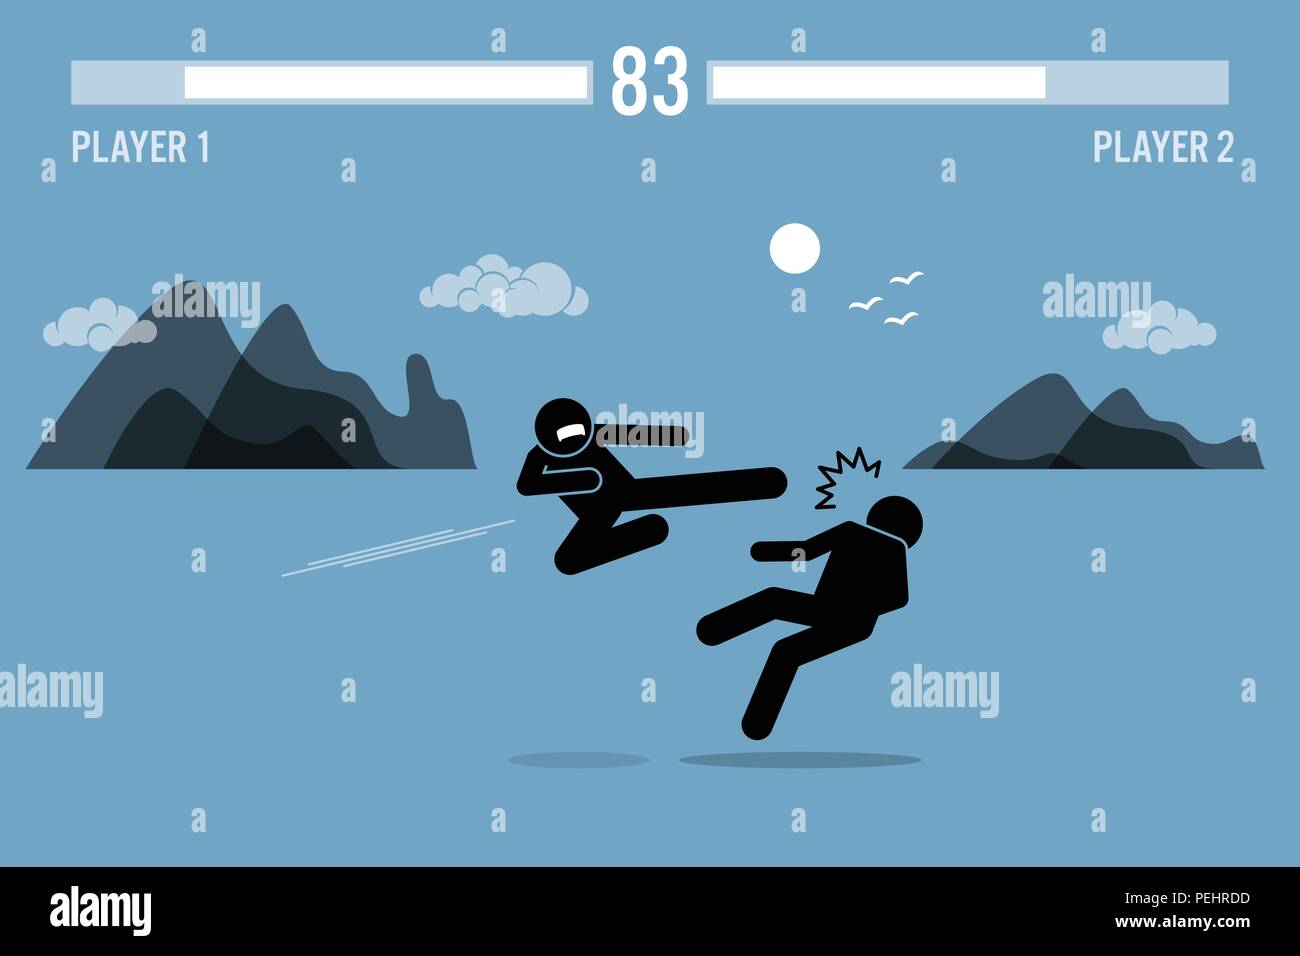 Abbildung fighter Zeichen in einem Videospiel Szene kämpfen mit Gesundheit Balken am oberen Stock. Eine Person ist Fliegen ein anderer Mann treten mit schönen sc Stock Vektor